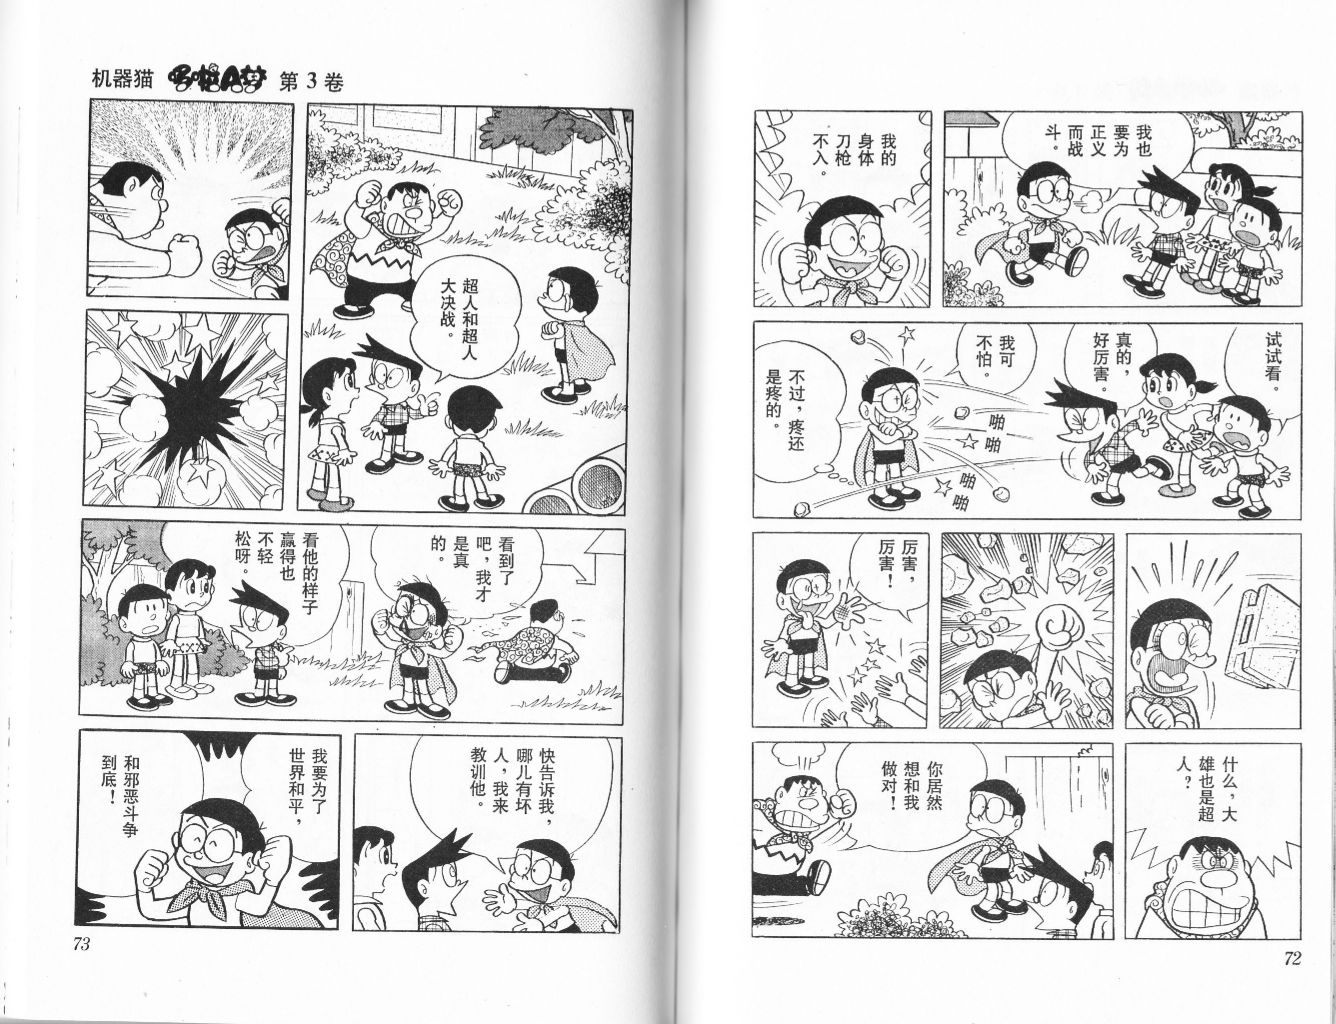 祝 四分の一完了 中文版 ドラえもん 16年6月4日 るもんが の外国語学習日記